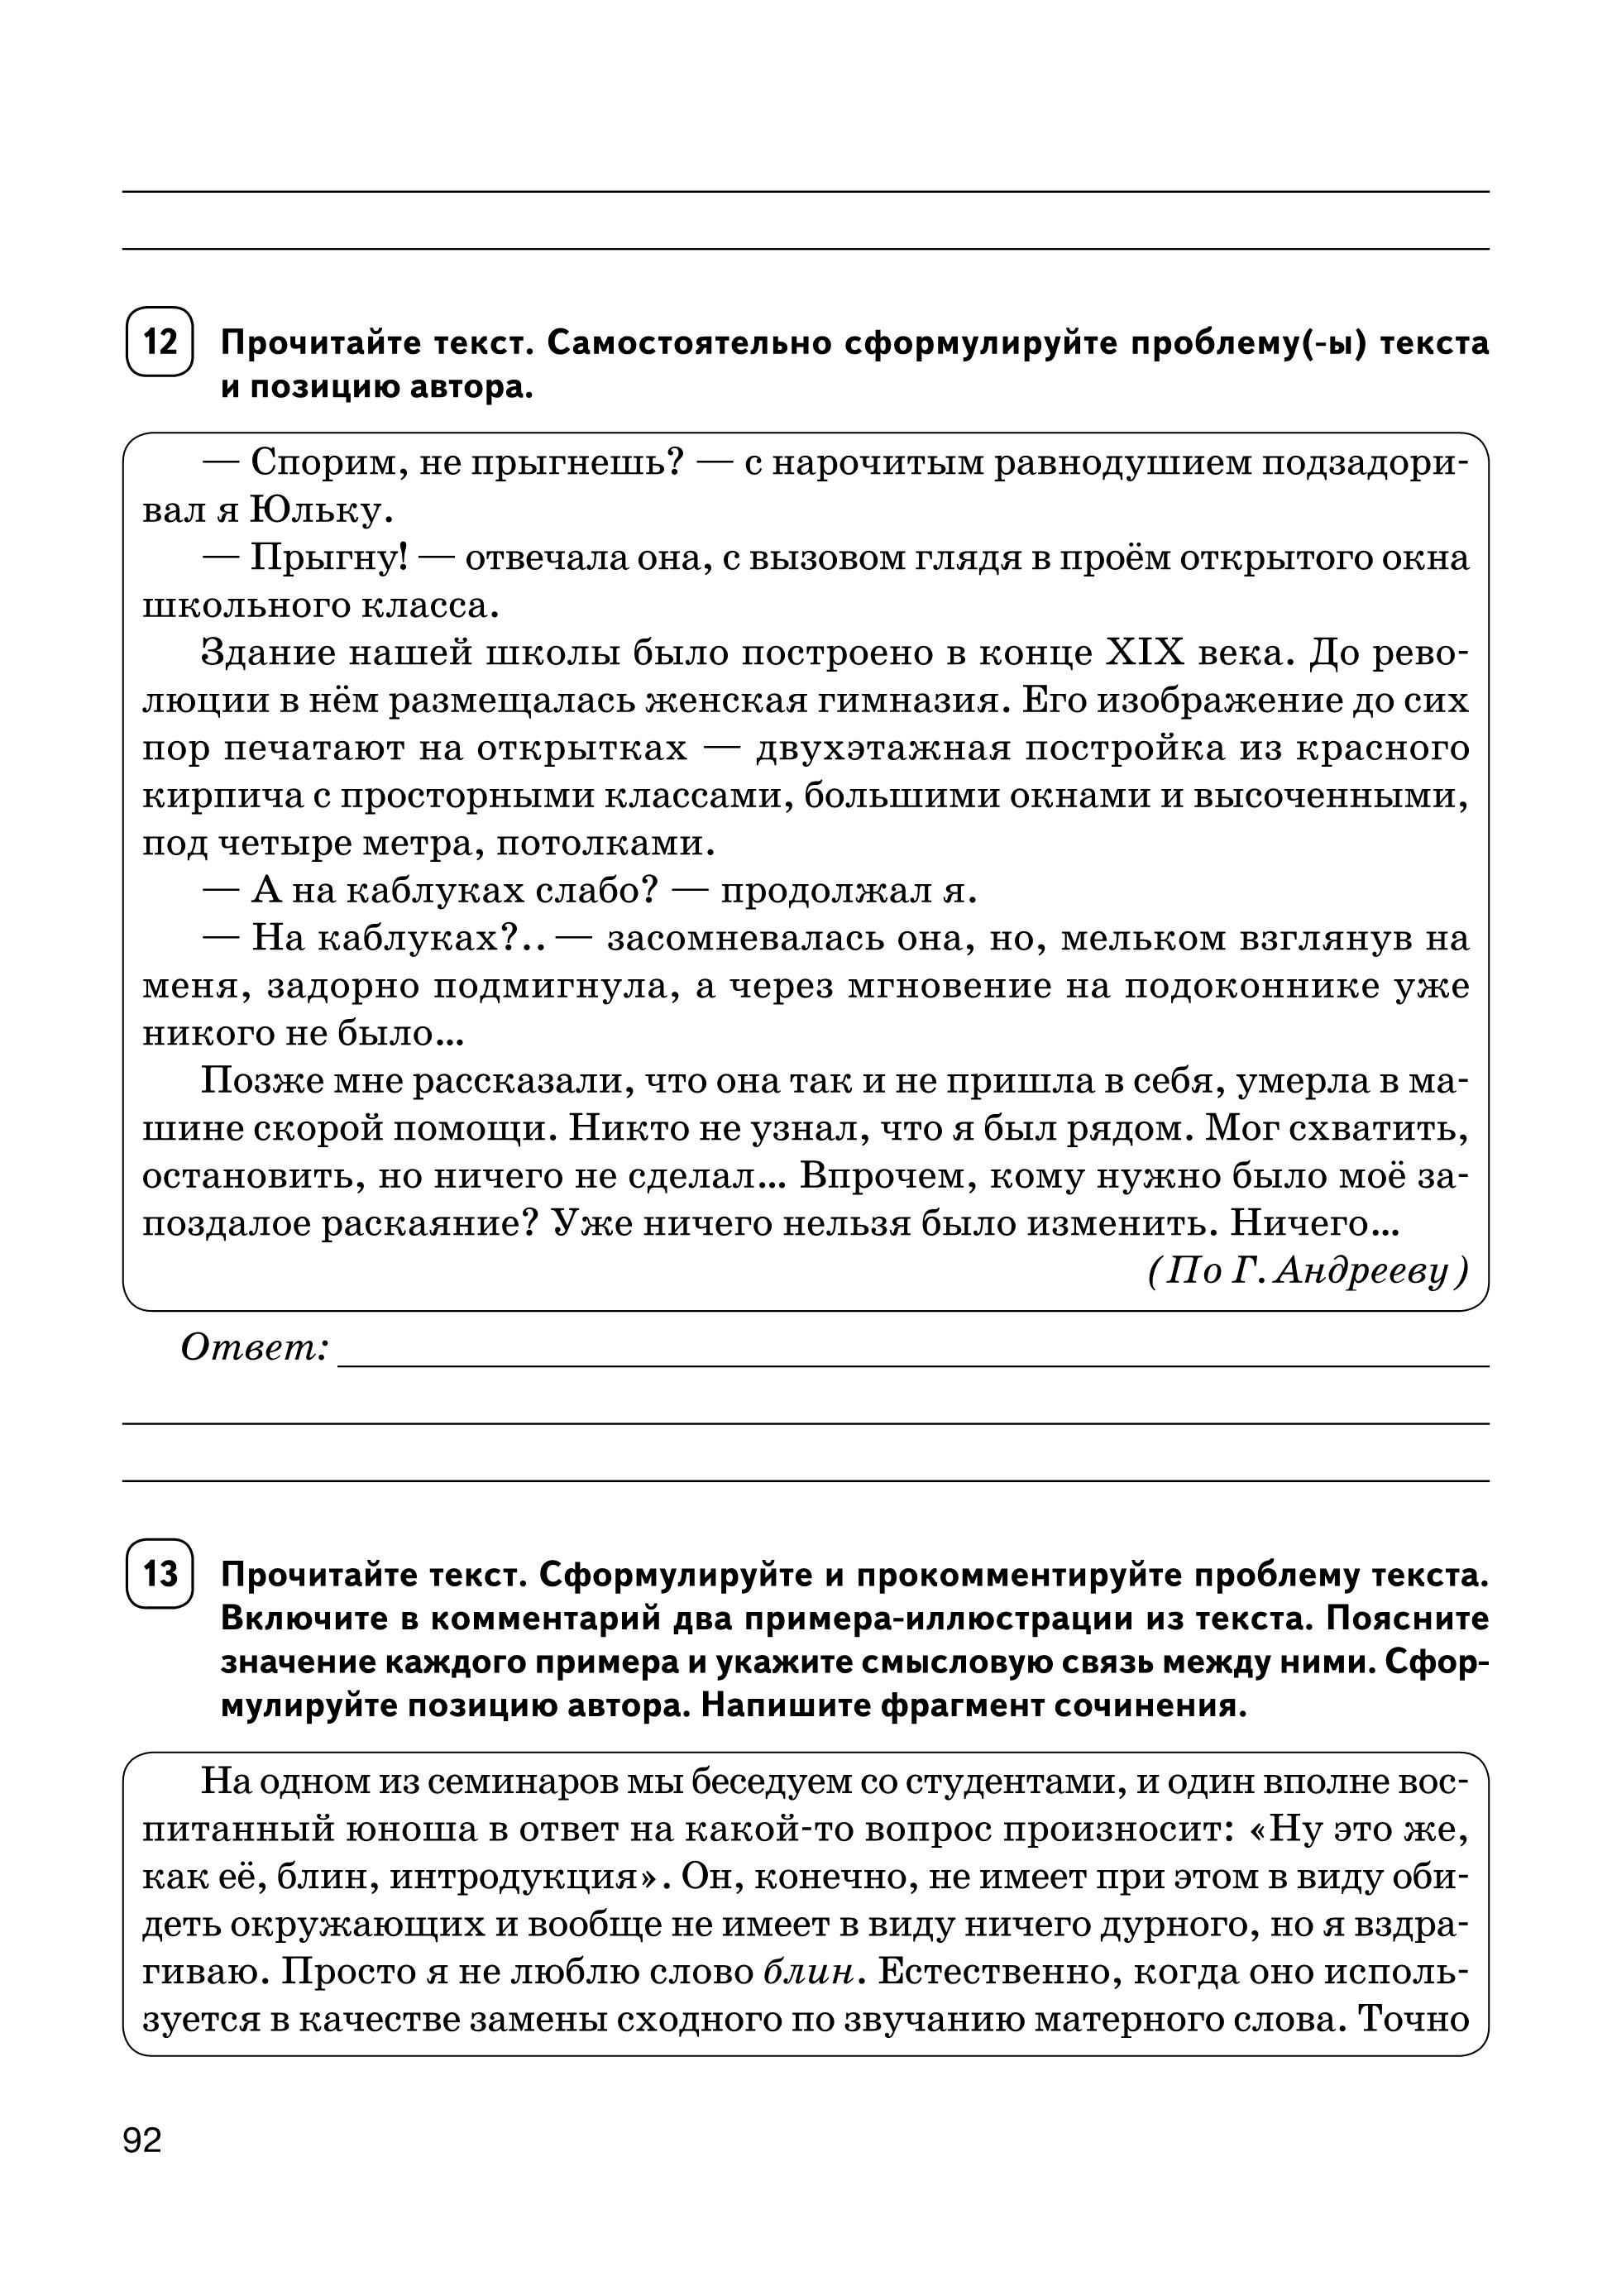 Русский язык. Сочинение на ЕГЭ. Курс интенсивной подготовки. 11-е издание